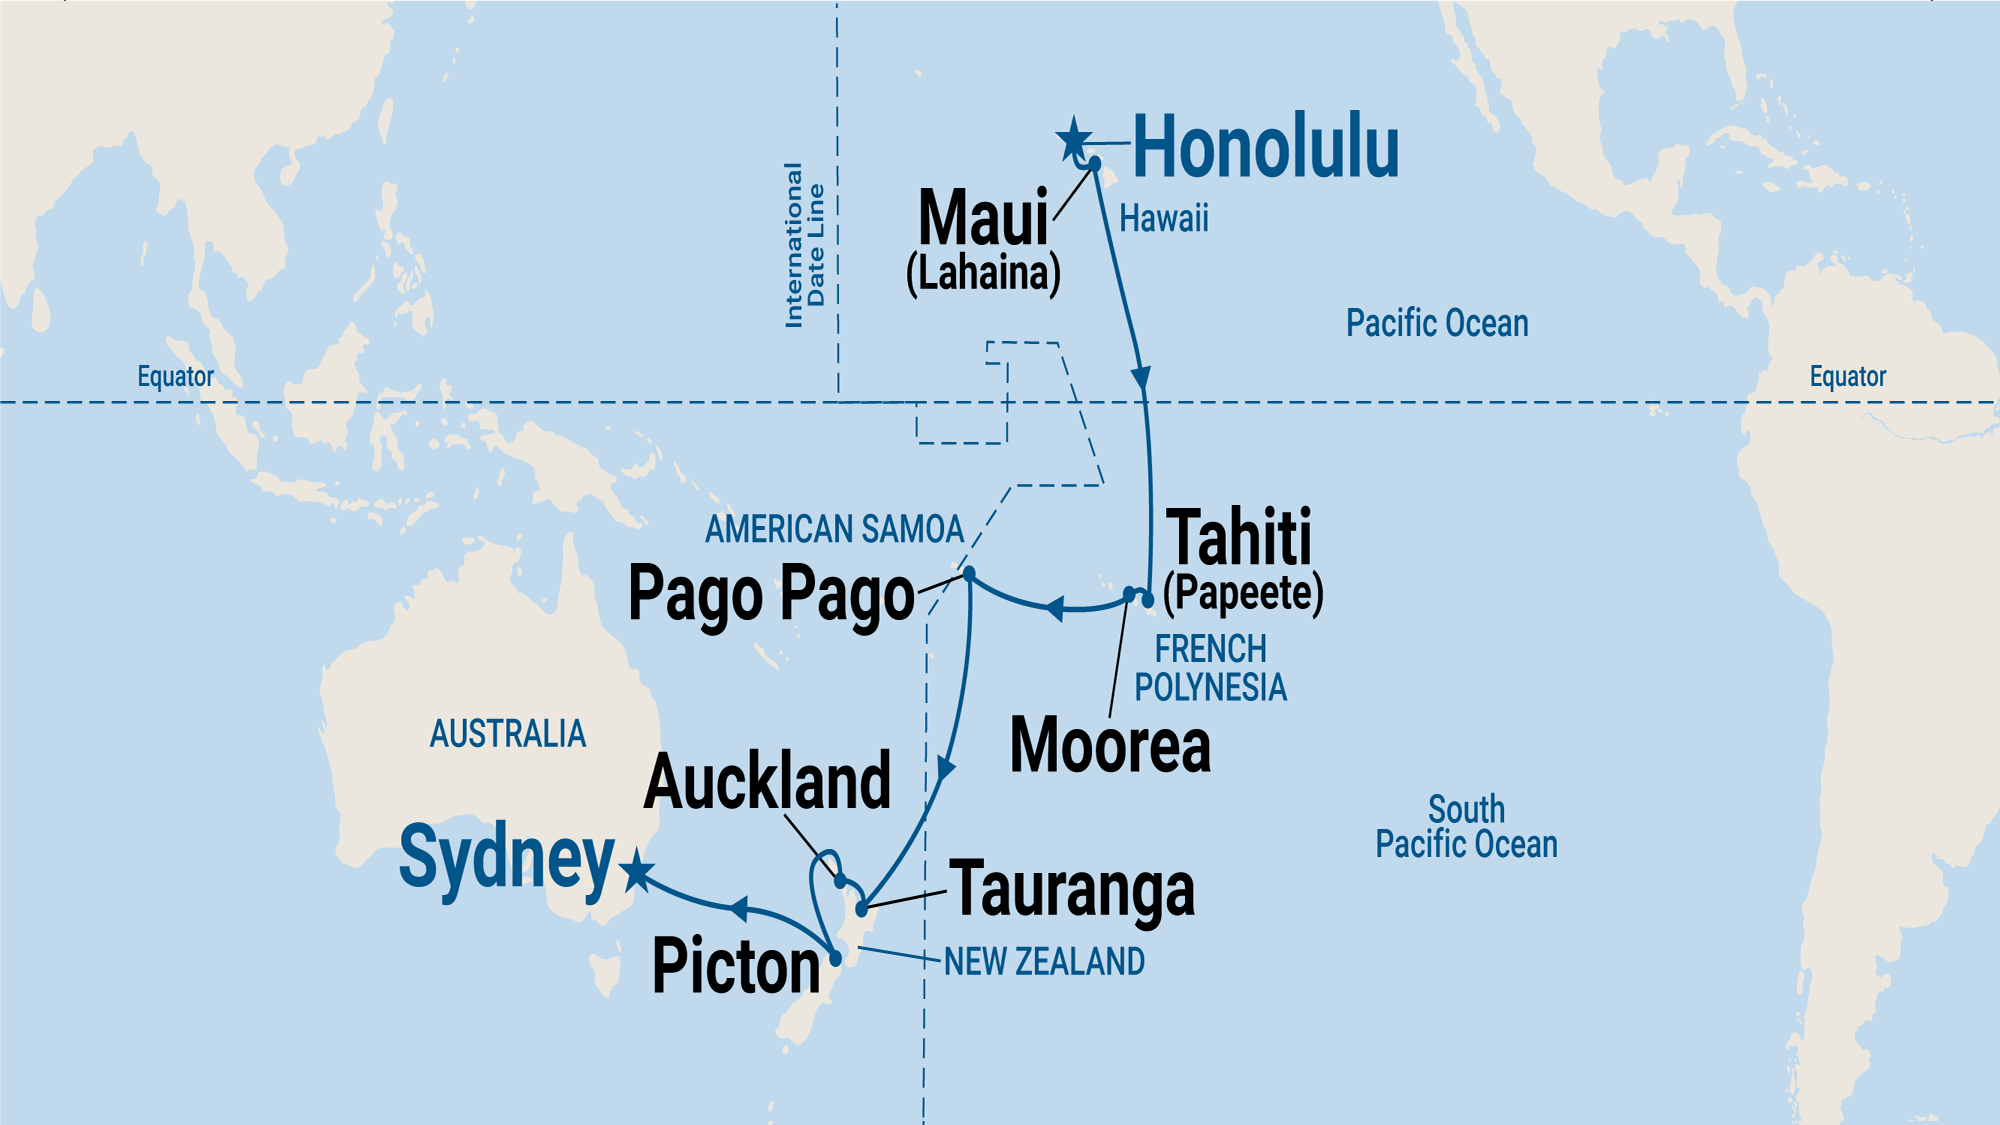 Hawaii, Tahiti & South Pacific Crossing Cruise with Royal Princess